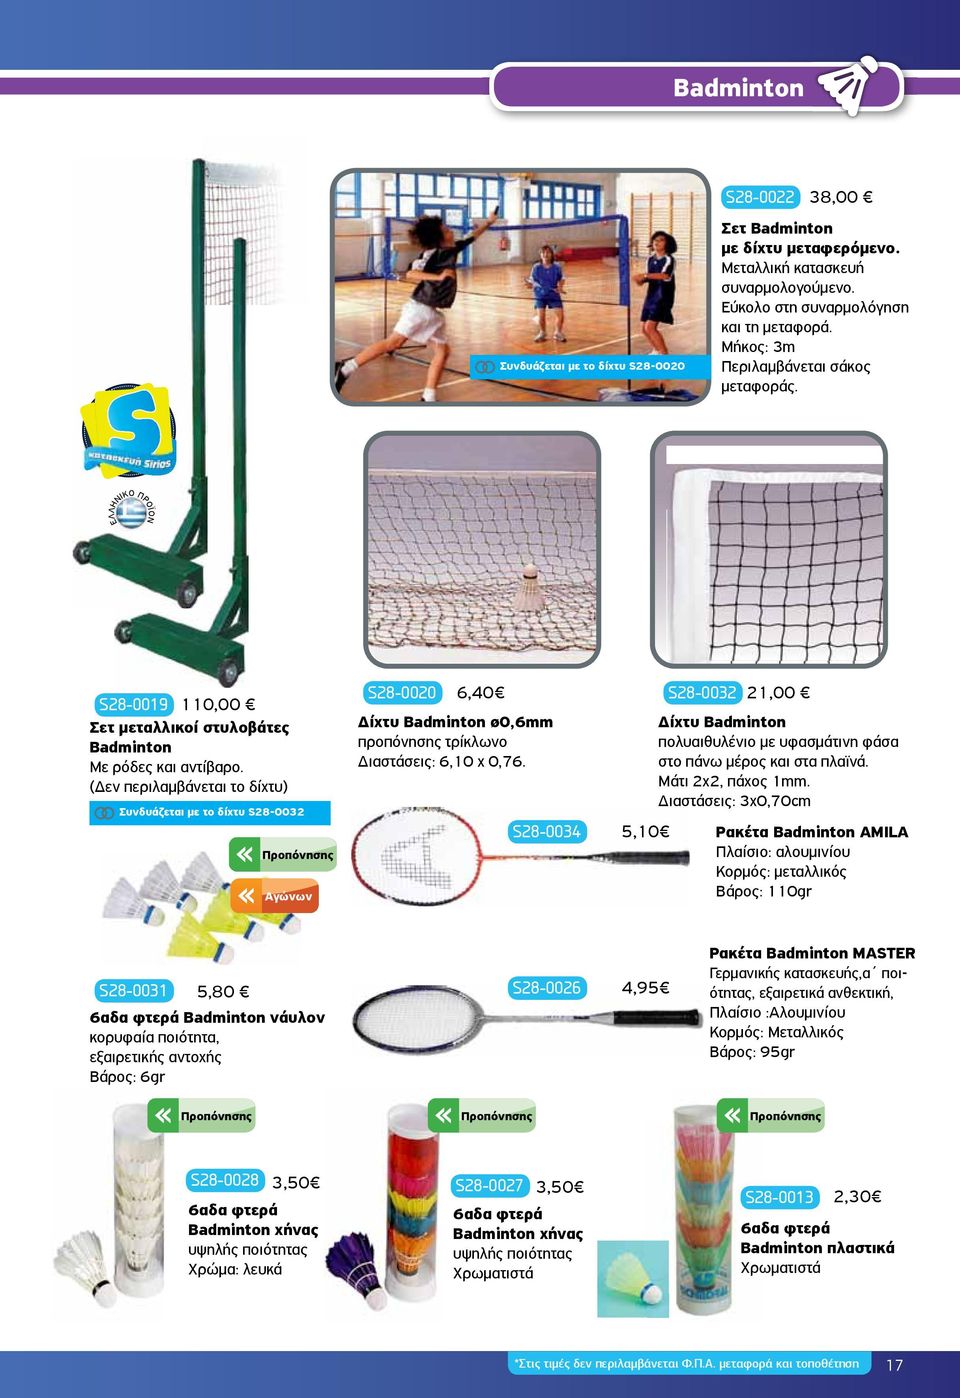 (Δεν περιλαμβάνεται το δίχτυ) Συνδυάζεται με το δίχτυ S28-0032 Προπόνησης Αγώνων S28-0020 6,40 Δίχτυ Badminton ø0,6mm προπόνησης τρίκλωνο Διαστάσεις: 6,10 χ 0,76.